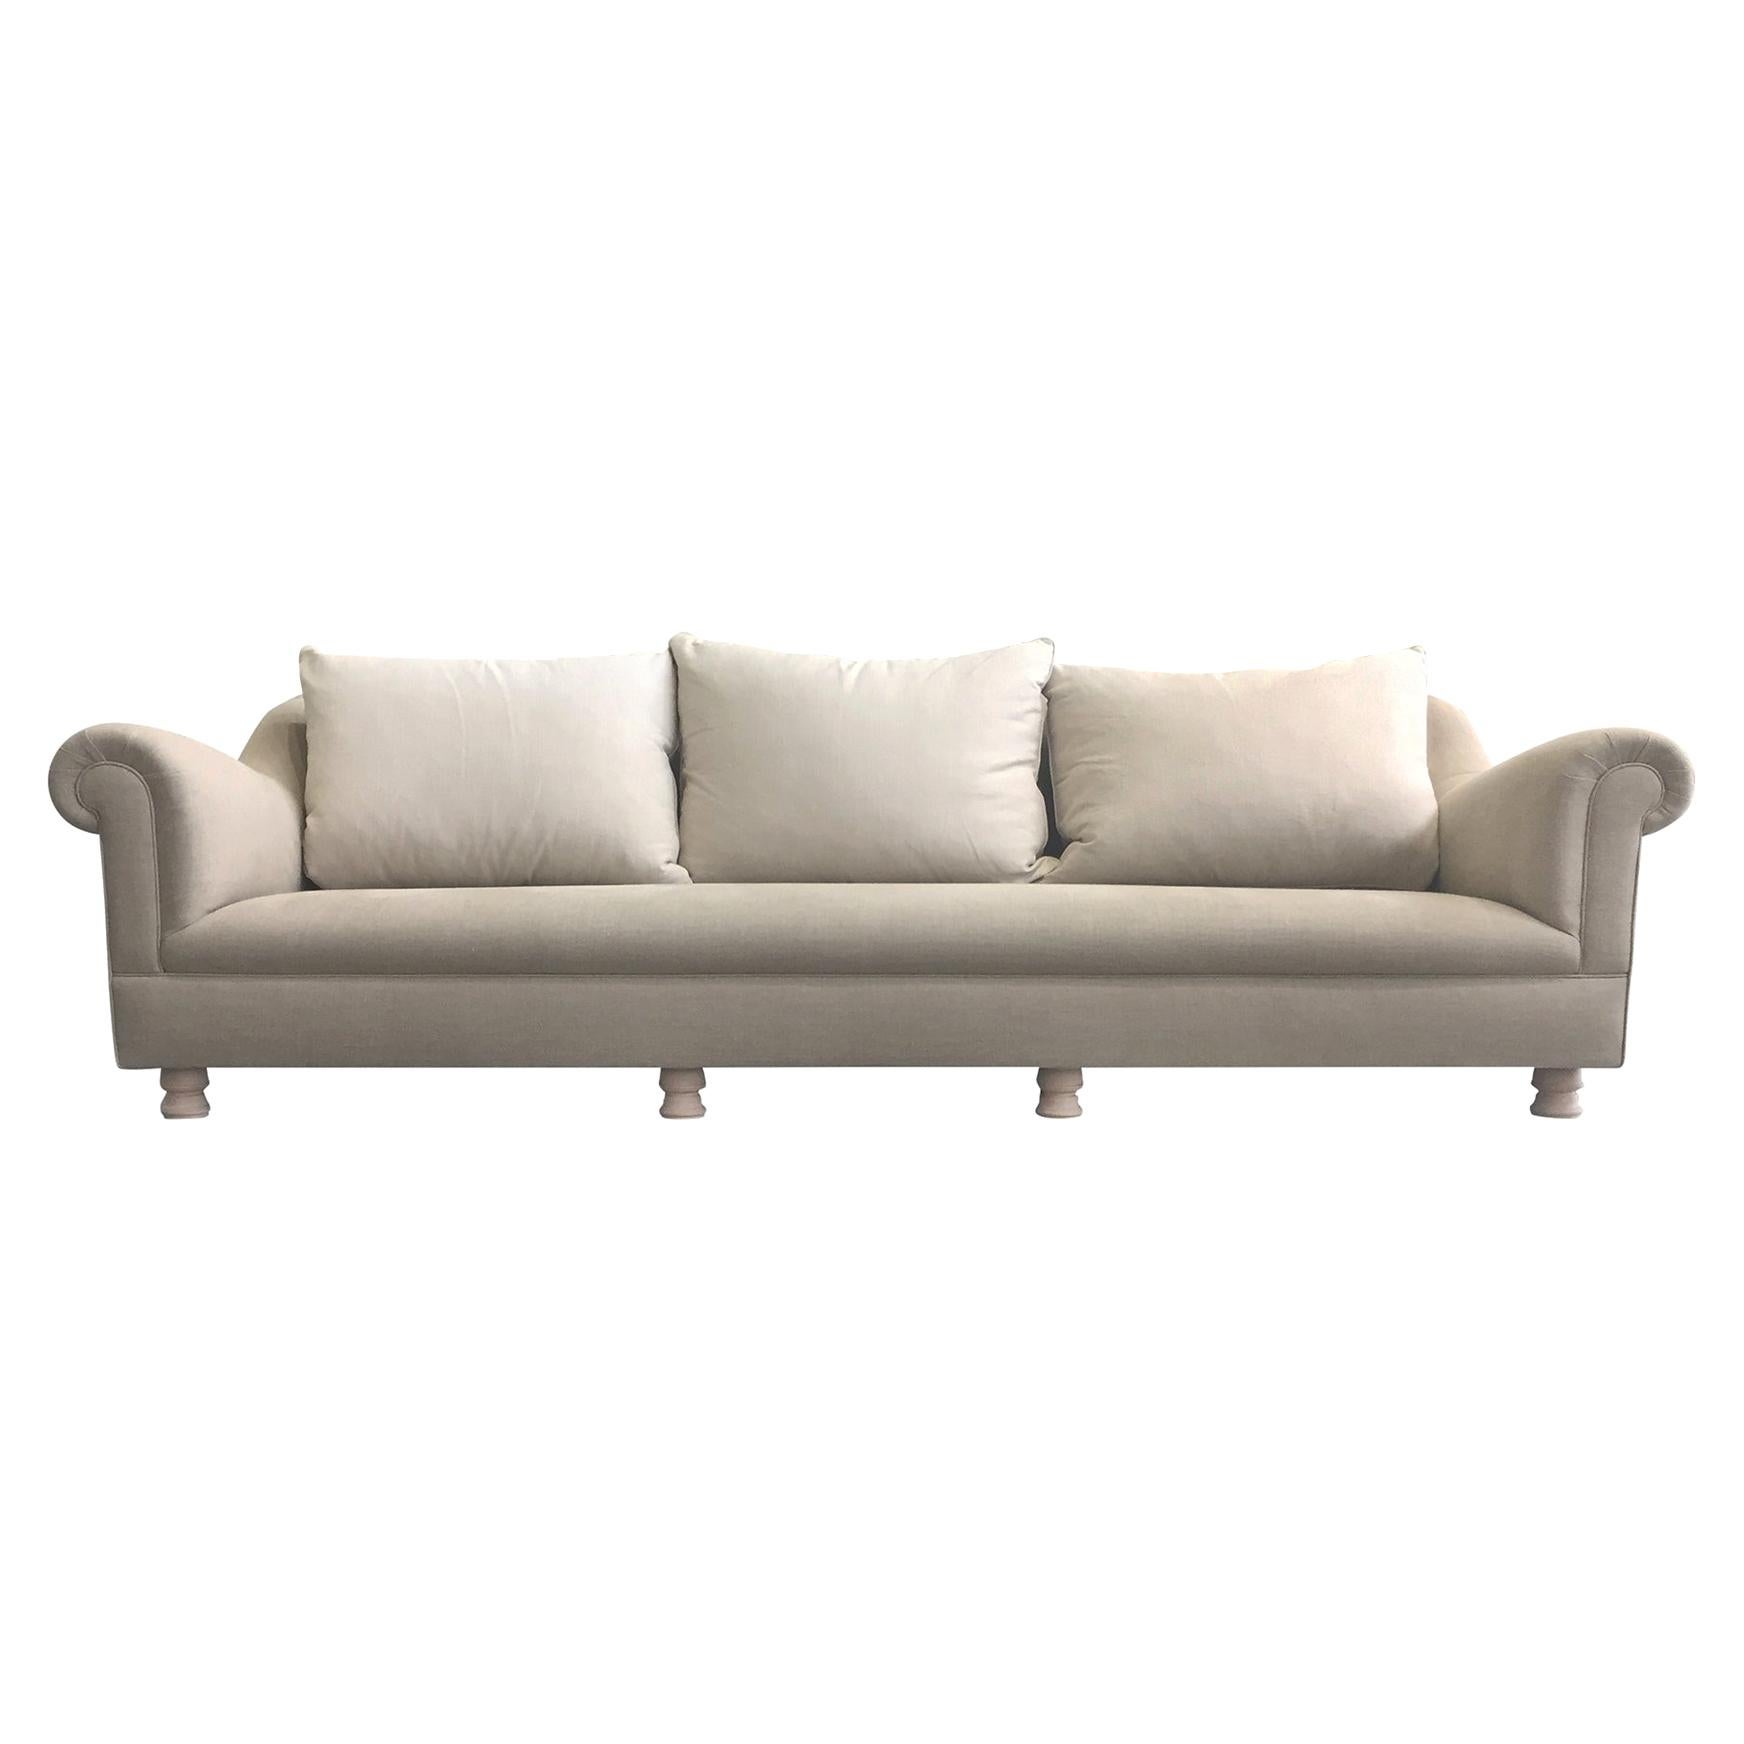 Axel Vervoordt Custom Sofa in Belgian Linen